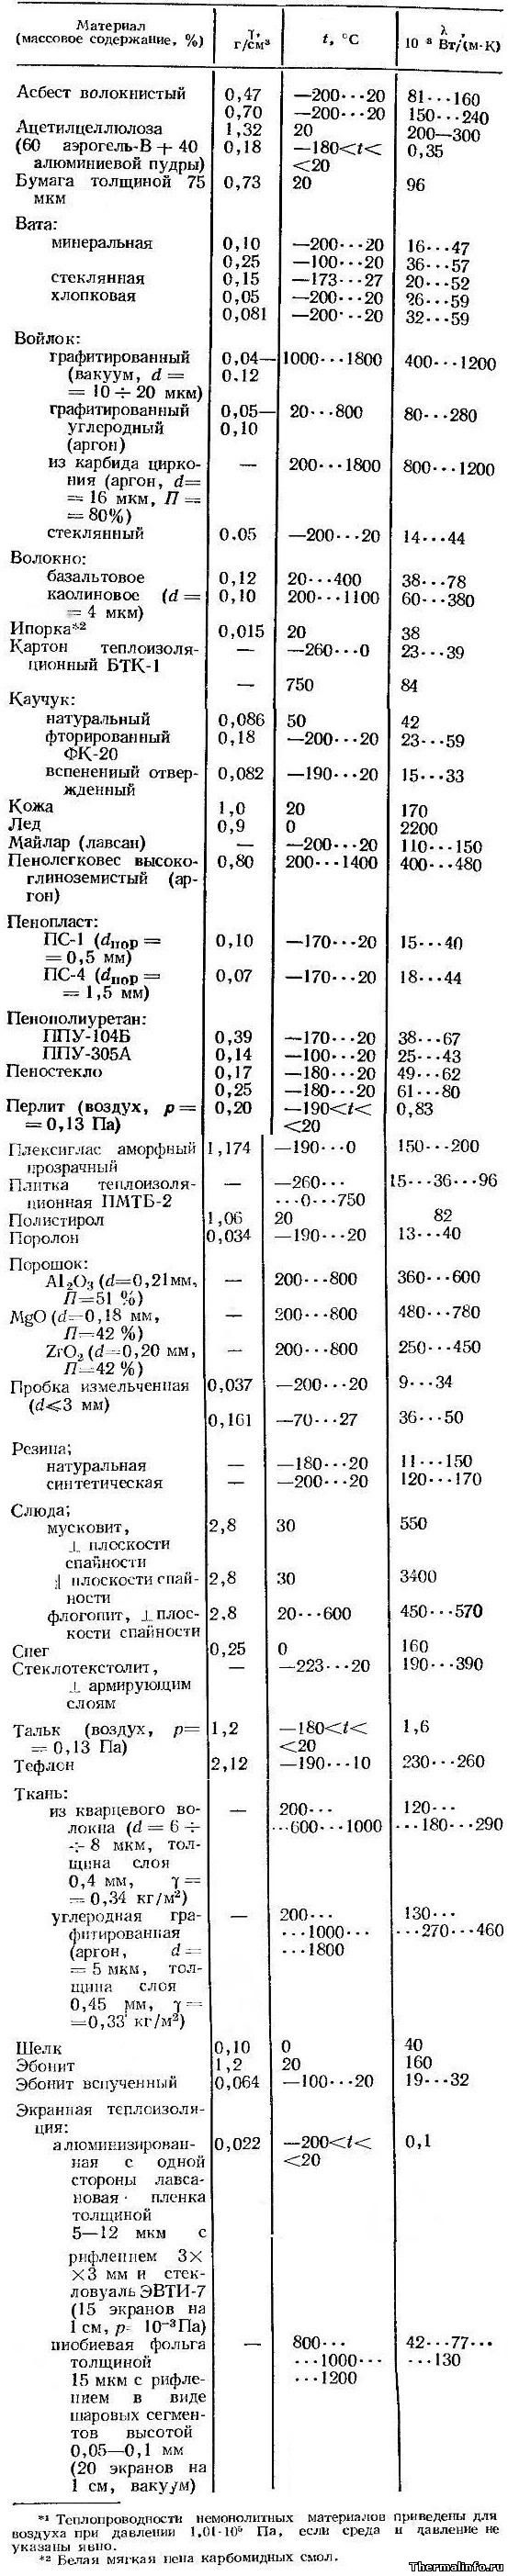 Теплопроводность теплоизоляционных и вспомогательных материалов, таблица 1